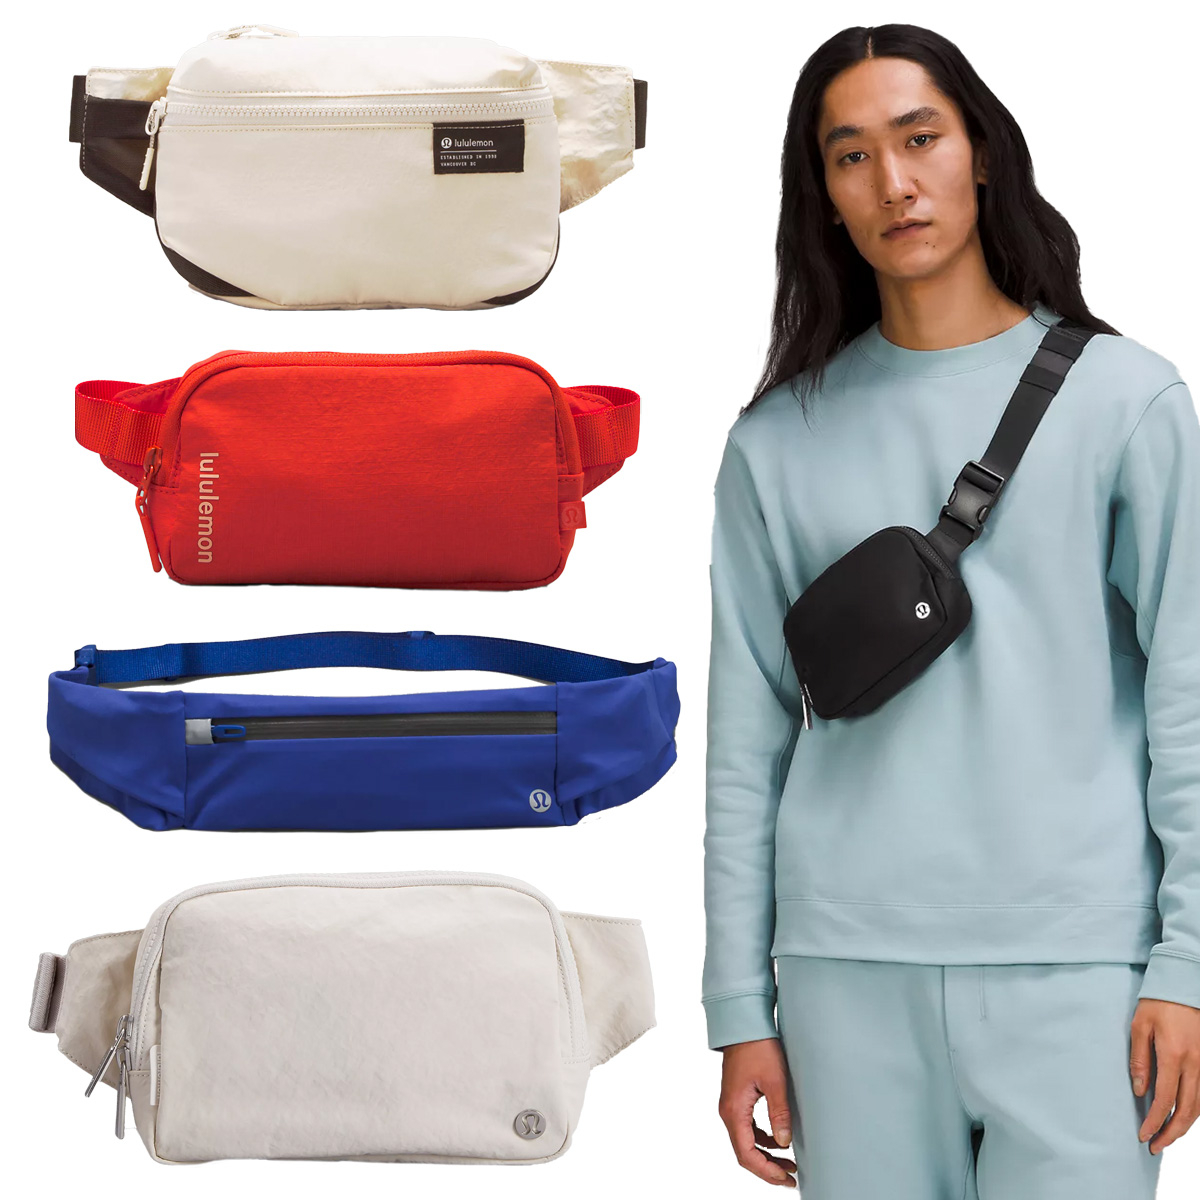 lululemon Everywhere Belt Bag Review